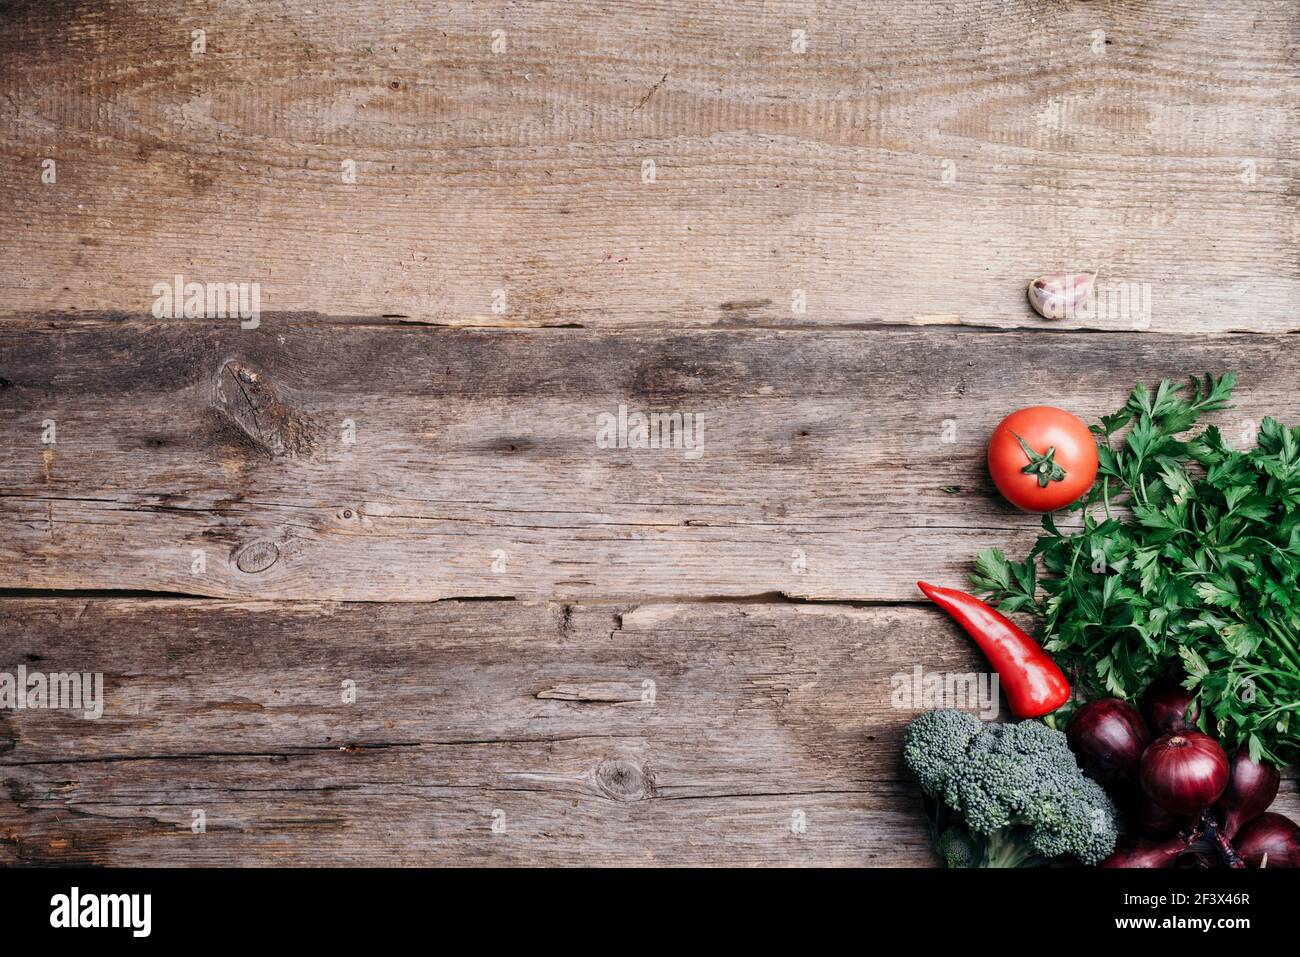 Gesunde, saubere Lebensmittel Kochen und Essen Konzept. Kupferpfanne,  buntes Herbstgemüse auf Holzhintergrund. Draufsicht. Speicherplatz  kopieren. Vegetarische Küche Stockfotografie - Alamy